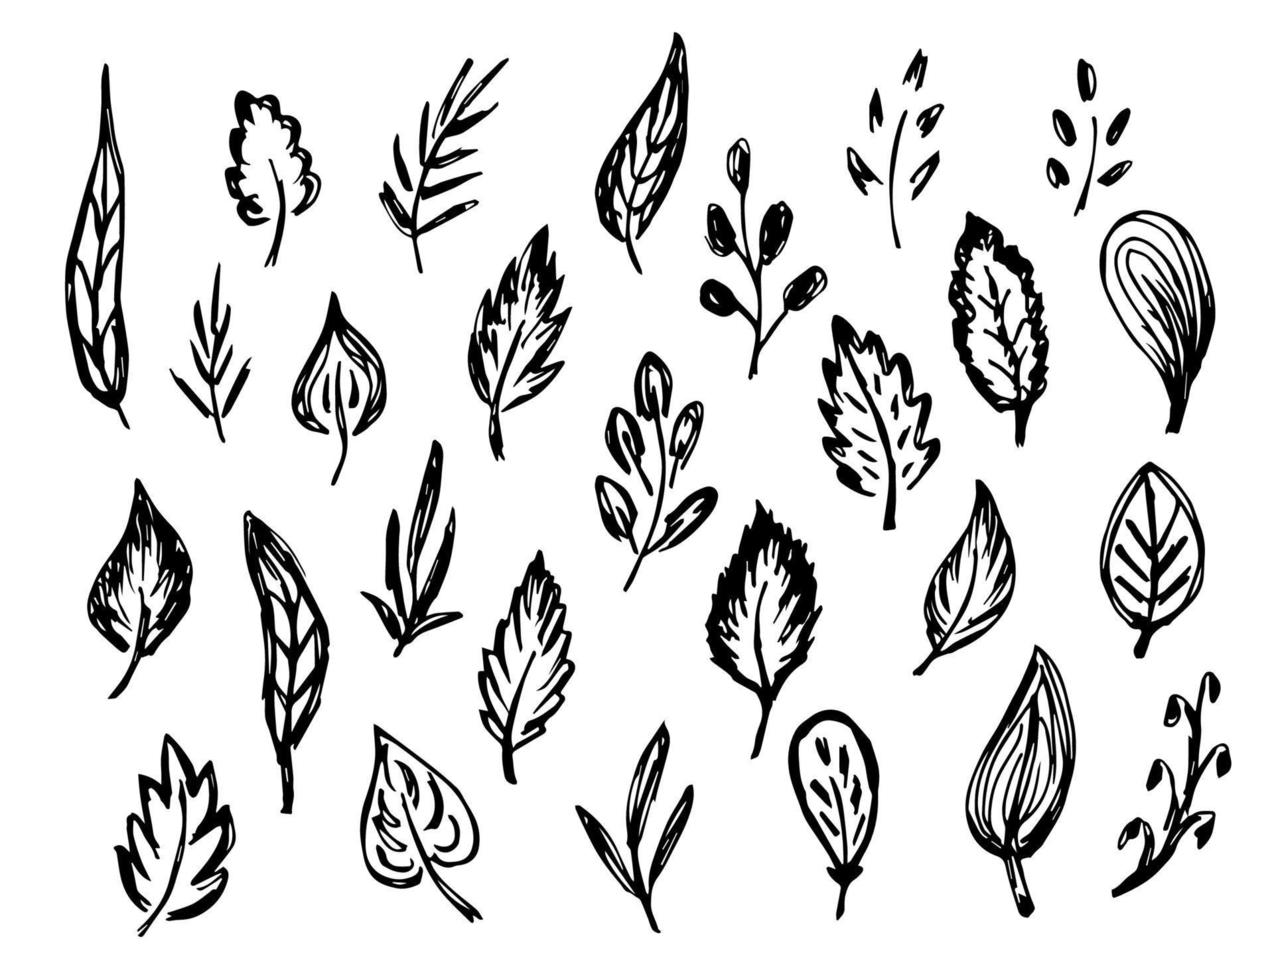 ensemble de griffonnages vectoriels noir et blanc sommaires à main levée. feuilles, branche, brindille, feuillage. éléments de la nature pour créer des motifs, du design. dessin à l'encre. vecteur